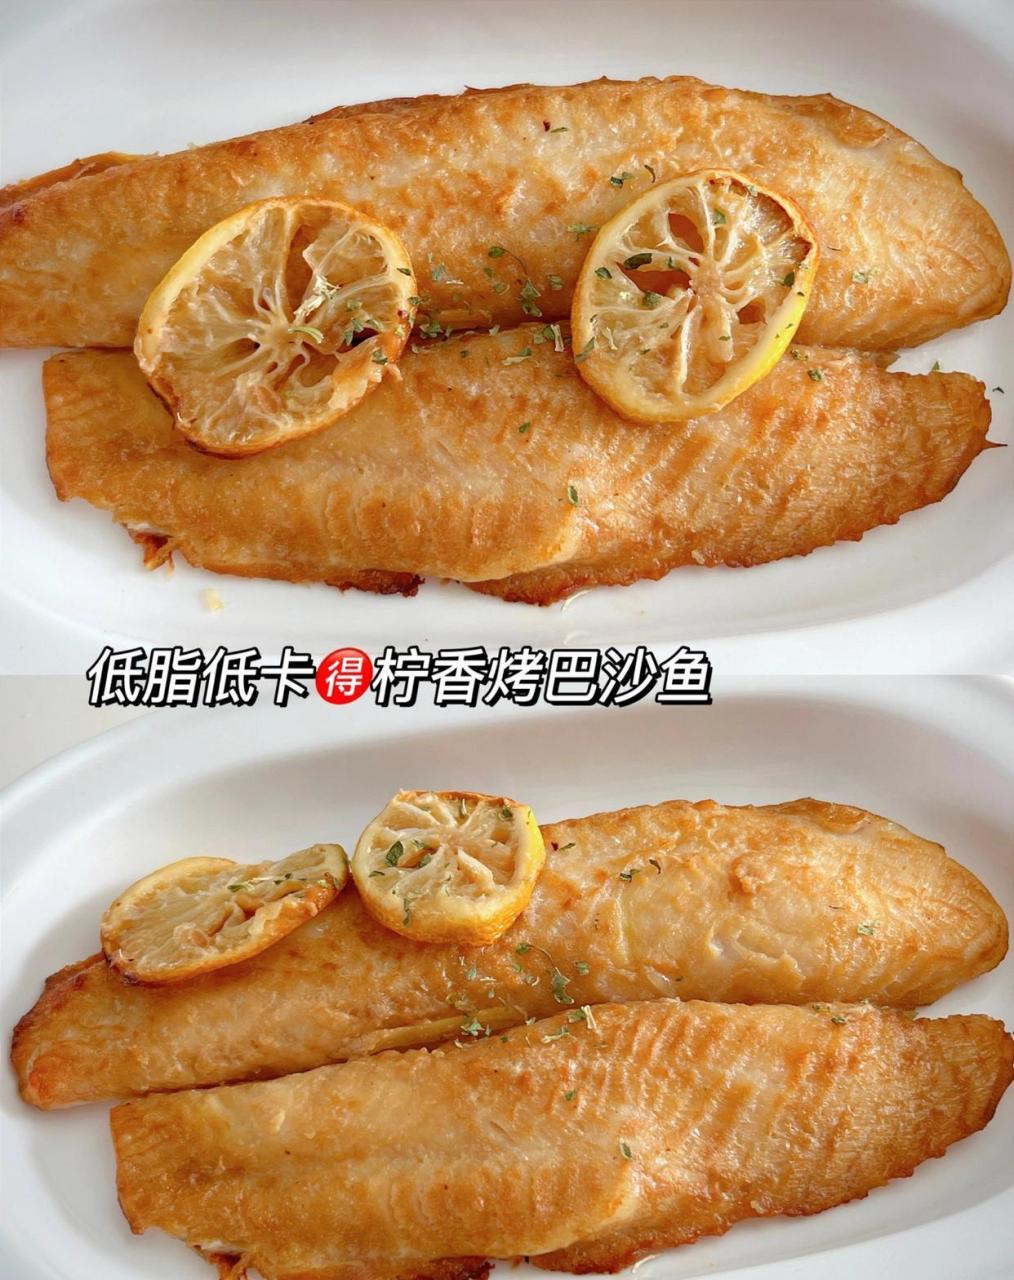 低脂低卡高蛋白75柠香烤巴沙鱼 加柠檬烤过的巴沙鱼有种特殊的清香